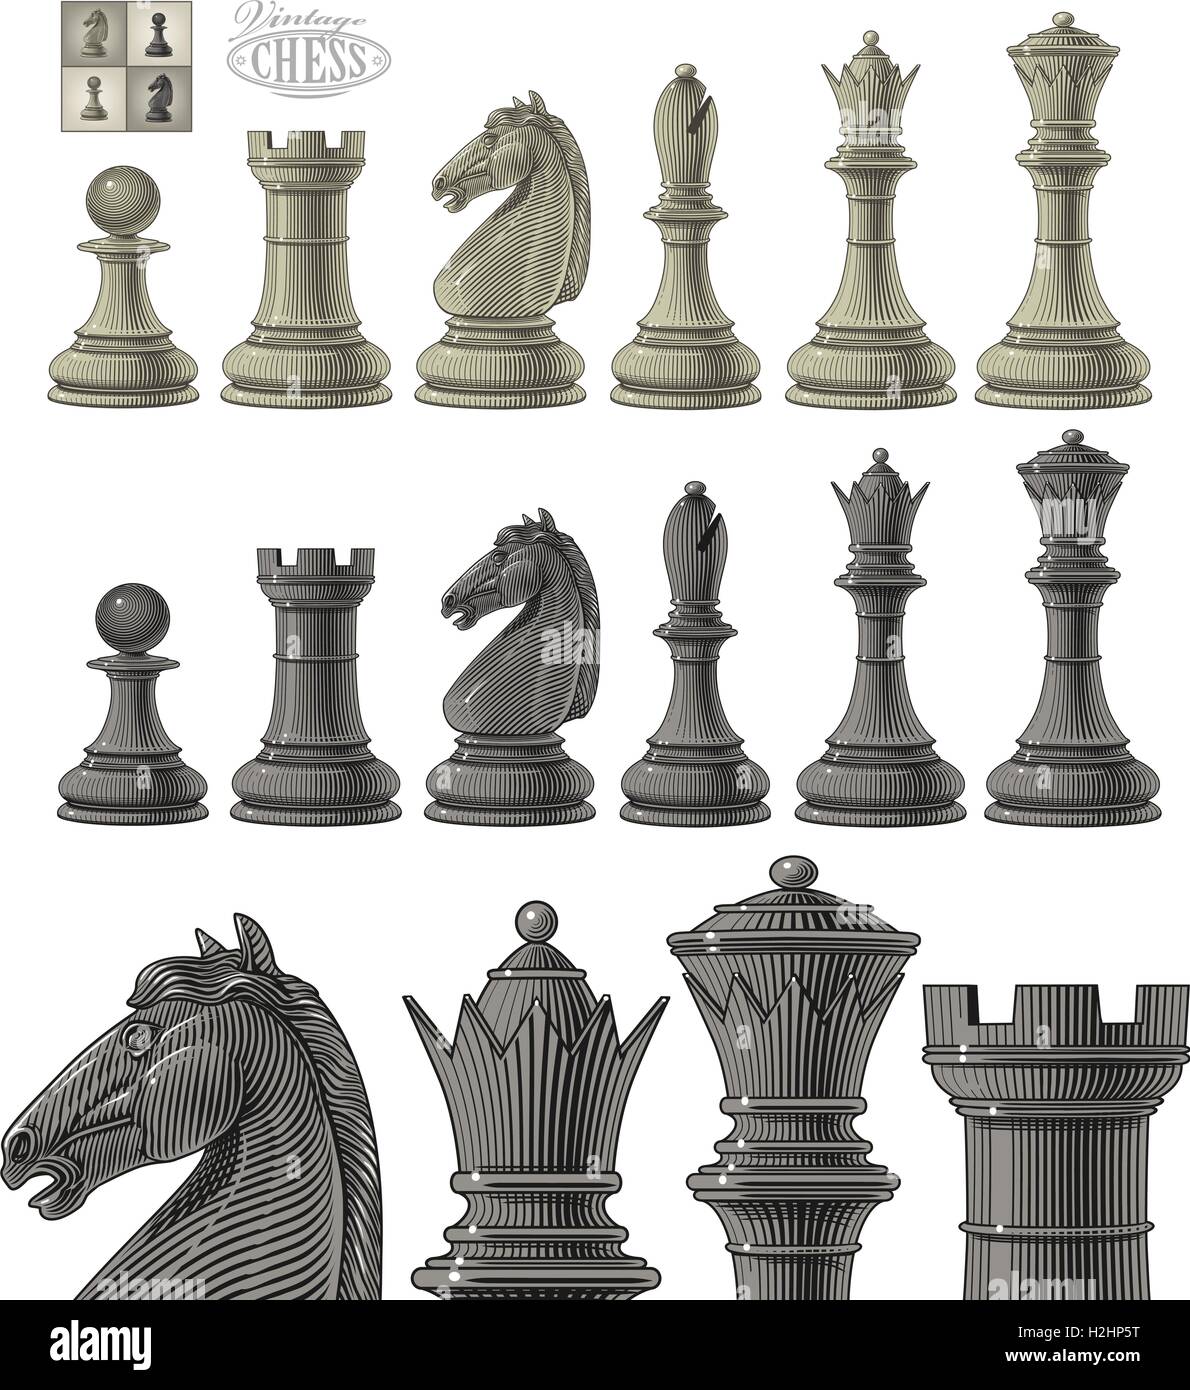 Illustrazione Vettoriale del pezzo degli scacchi impostato nel vintage stile di incisione, isolata, raggruppati su sfondo trasparente Illustrazione Vettoriale